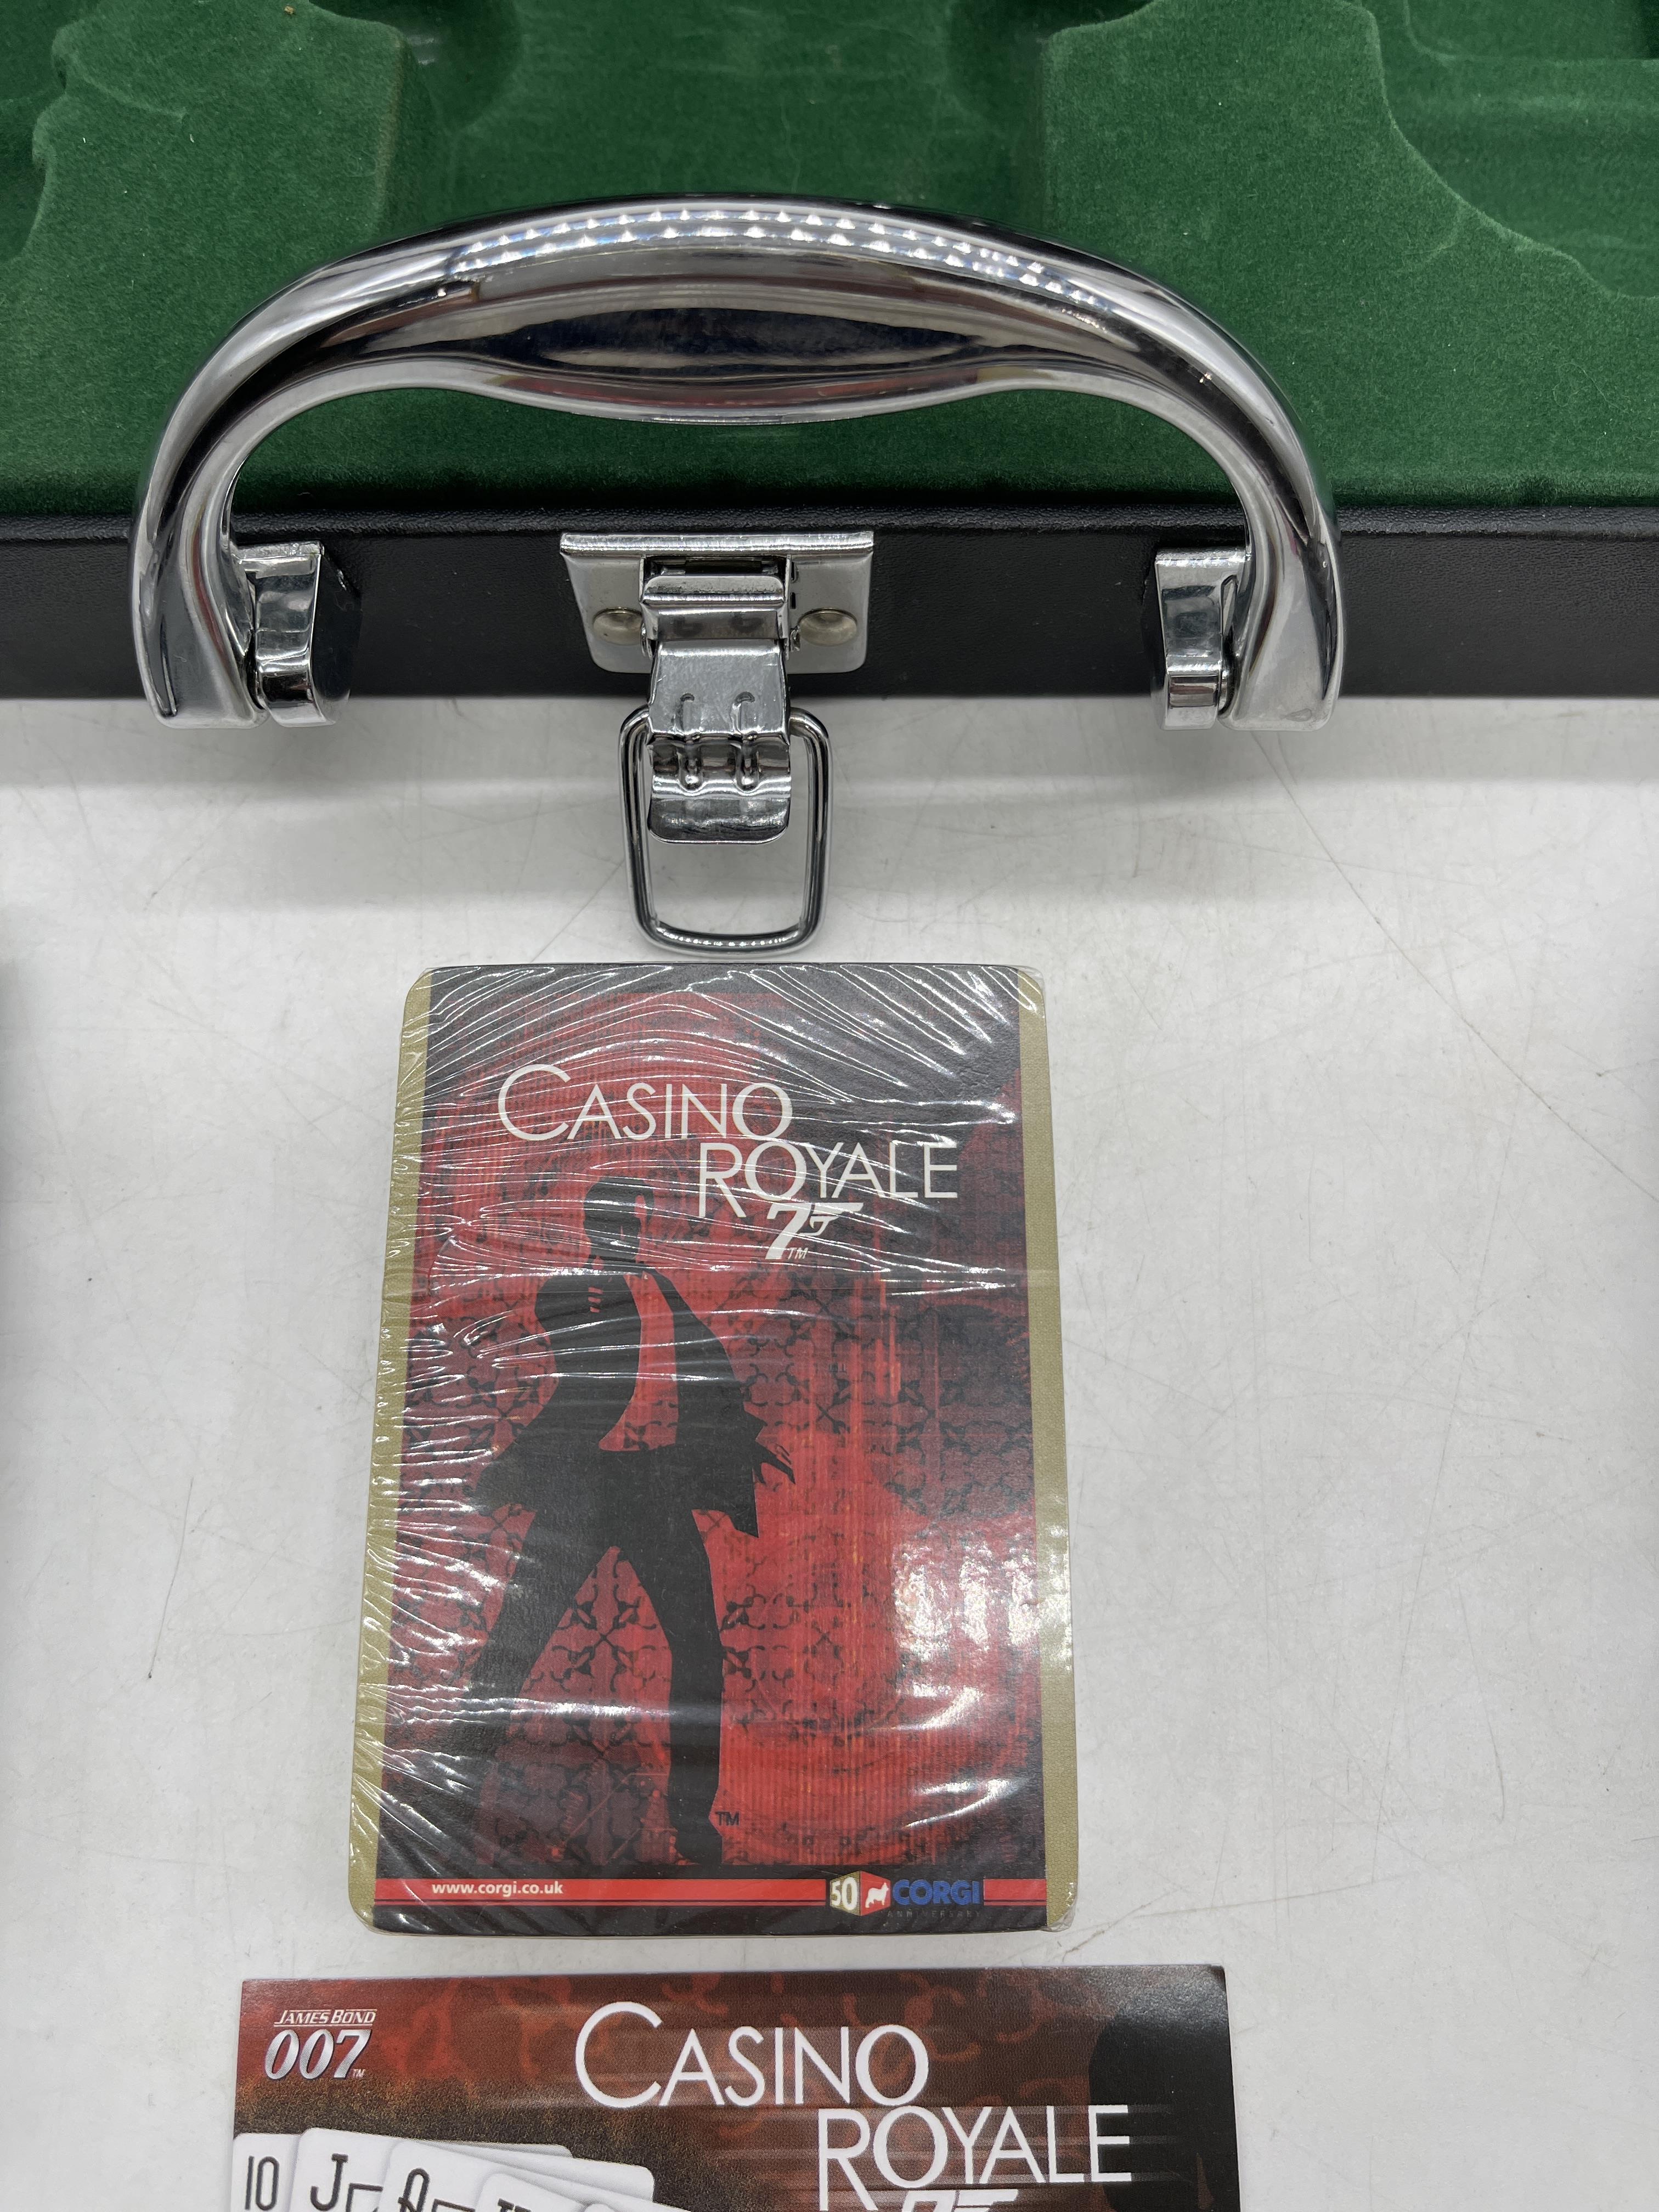 007 Casino Royal Corgi Box Kit - Image 4 of 20